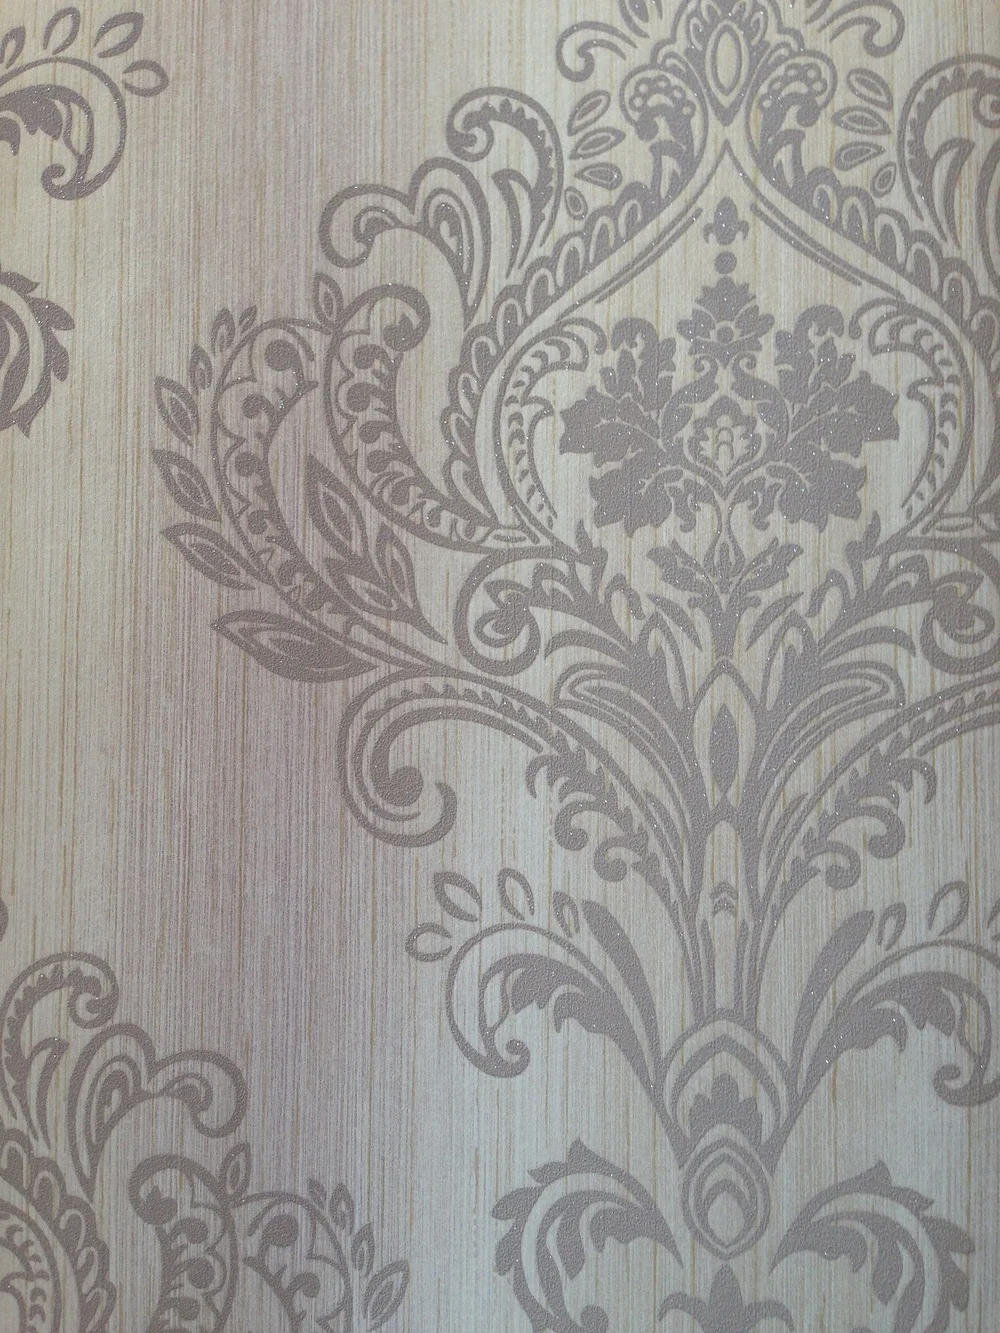 Harga Wallpaper Dinding Murah Wallpaper Thickness Decorative Pvc